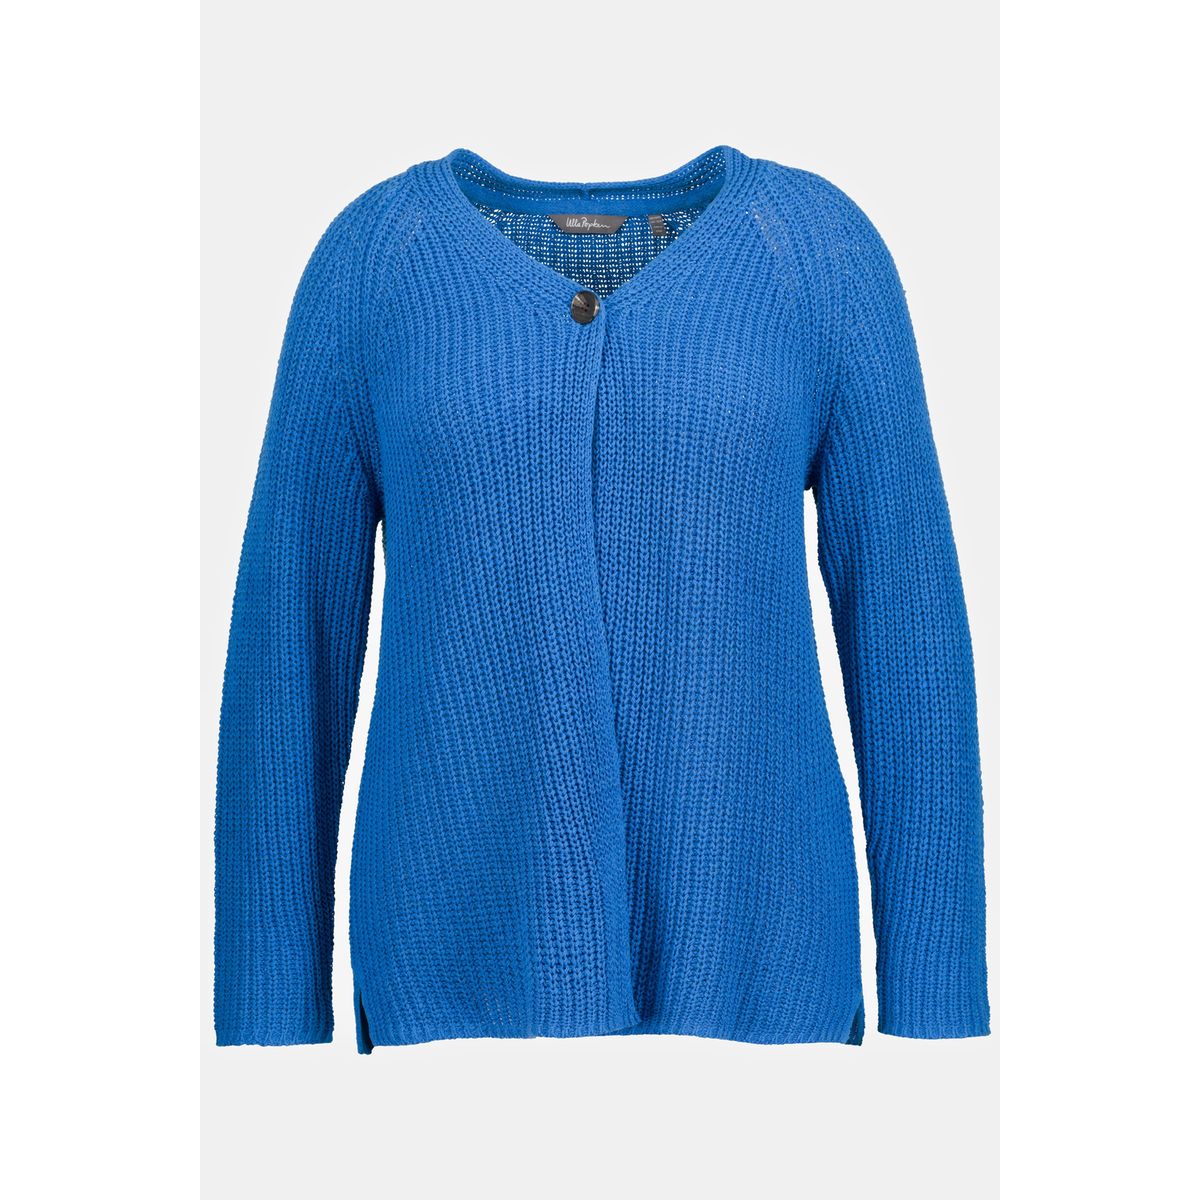 Visiter la boutique Ulla PopkenUlla Popken Femme Grandes Tailles Cardigan Fils à Tricoter décolleté en V Bouton décoratif Bleu Lapis Lazuli 42+ 809448760-42+ 